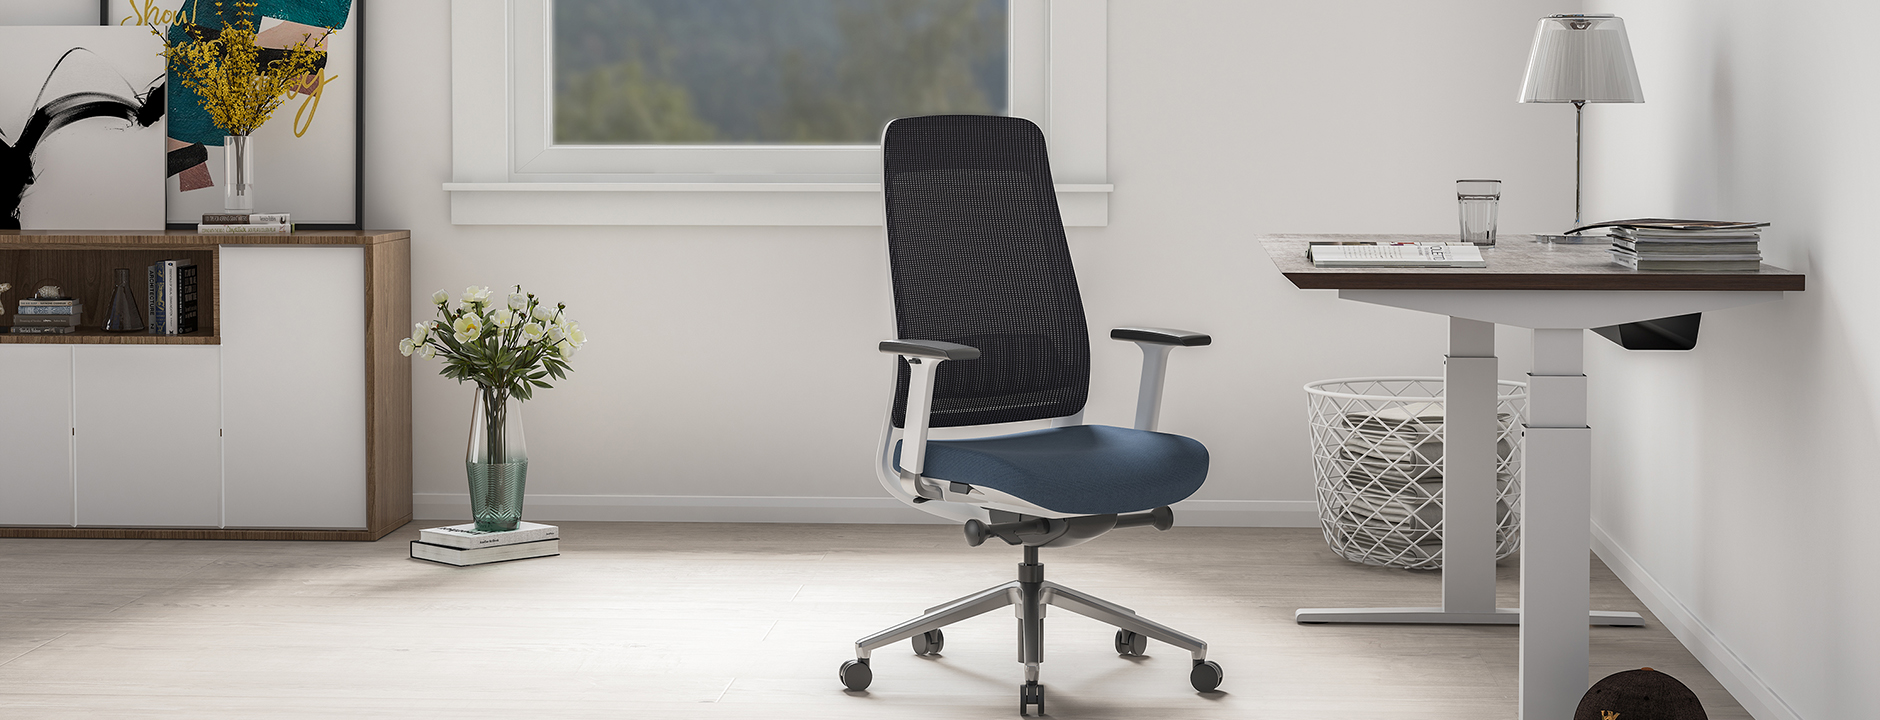 Come scegliere la sedia da ufficio giusta per le tue esigenze: una guida